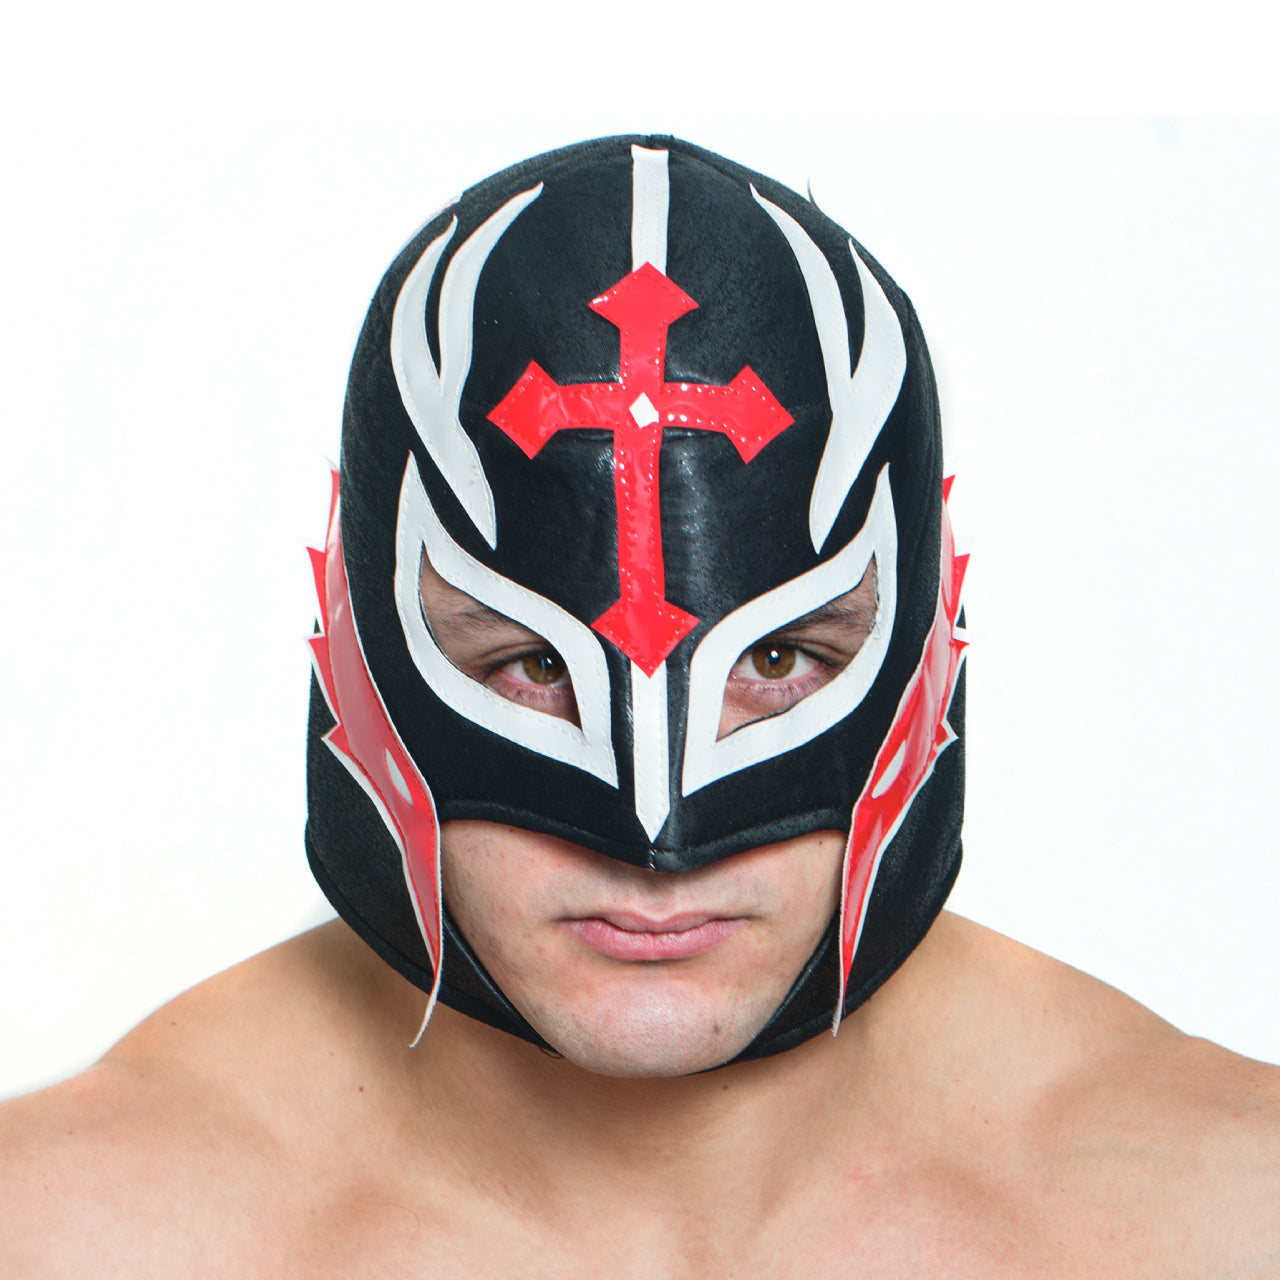 Black/Red Wrestling Mask